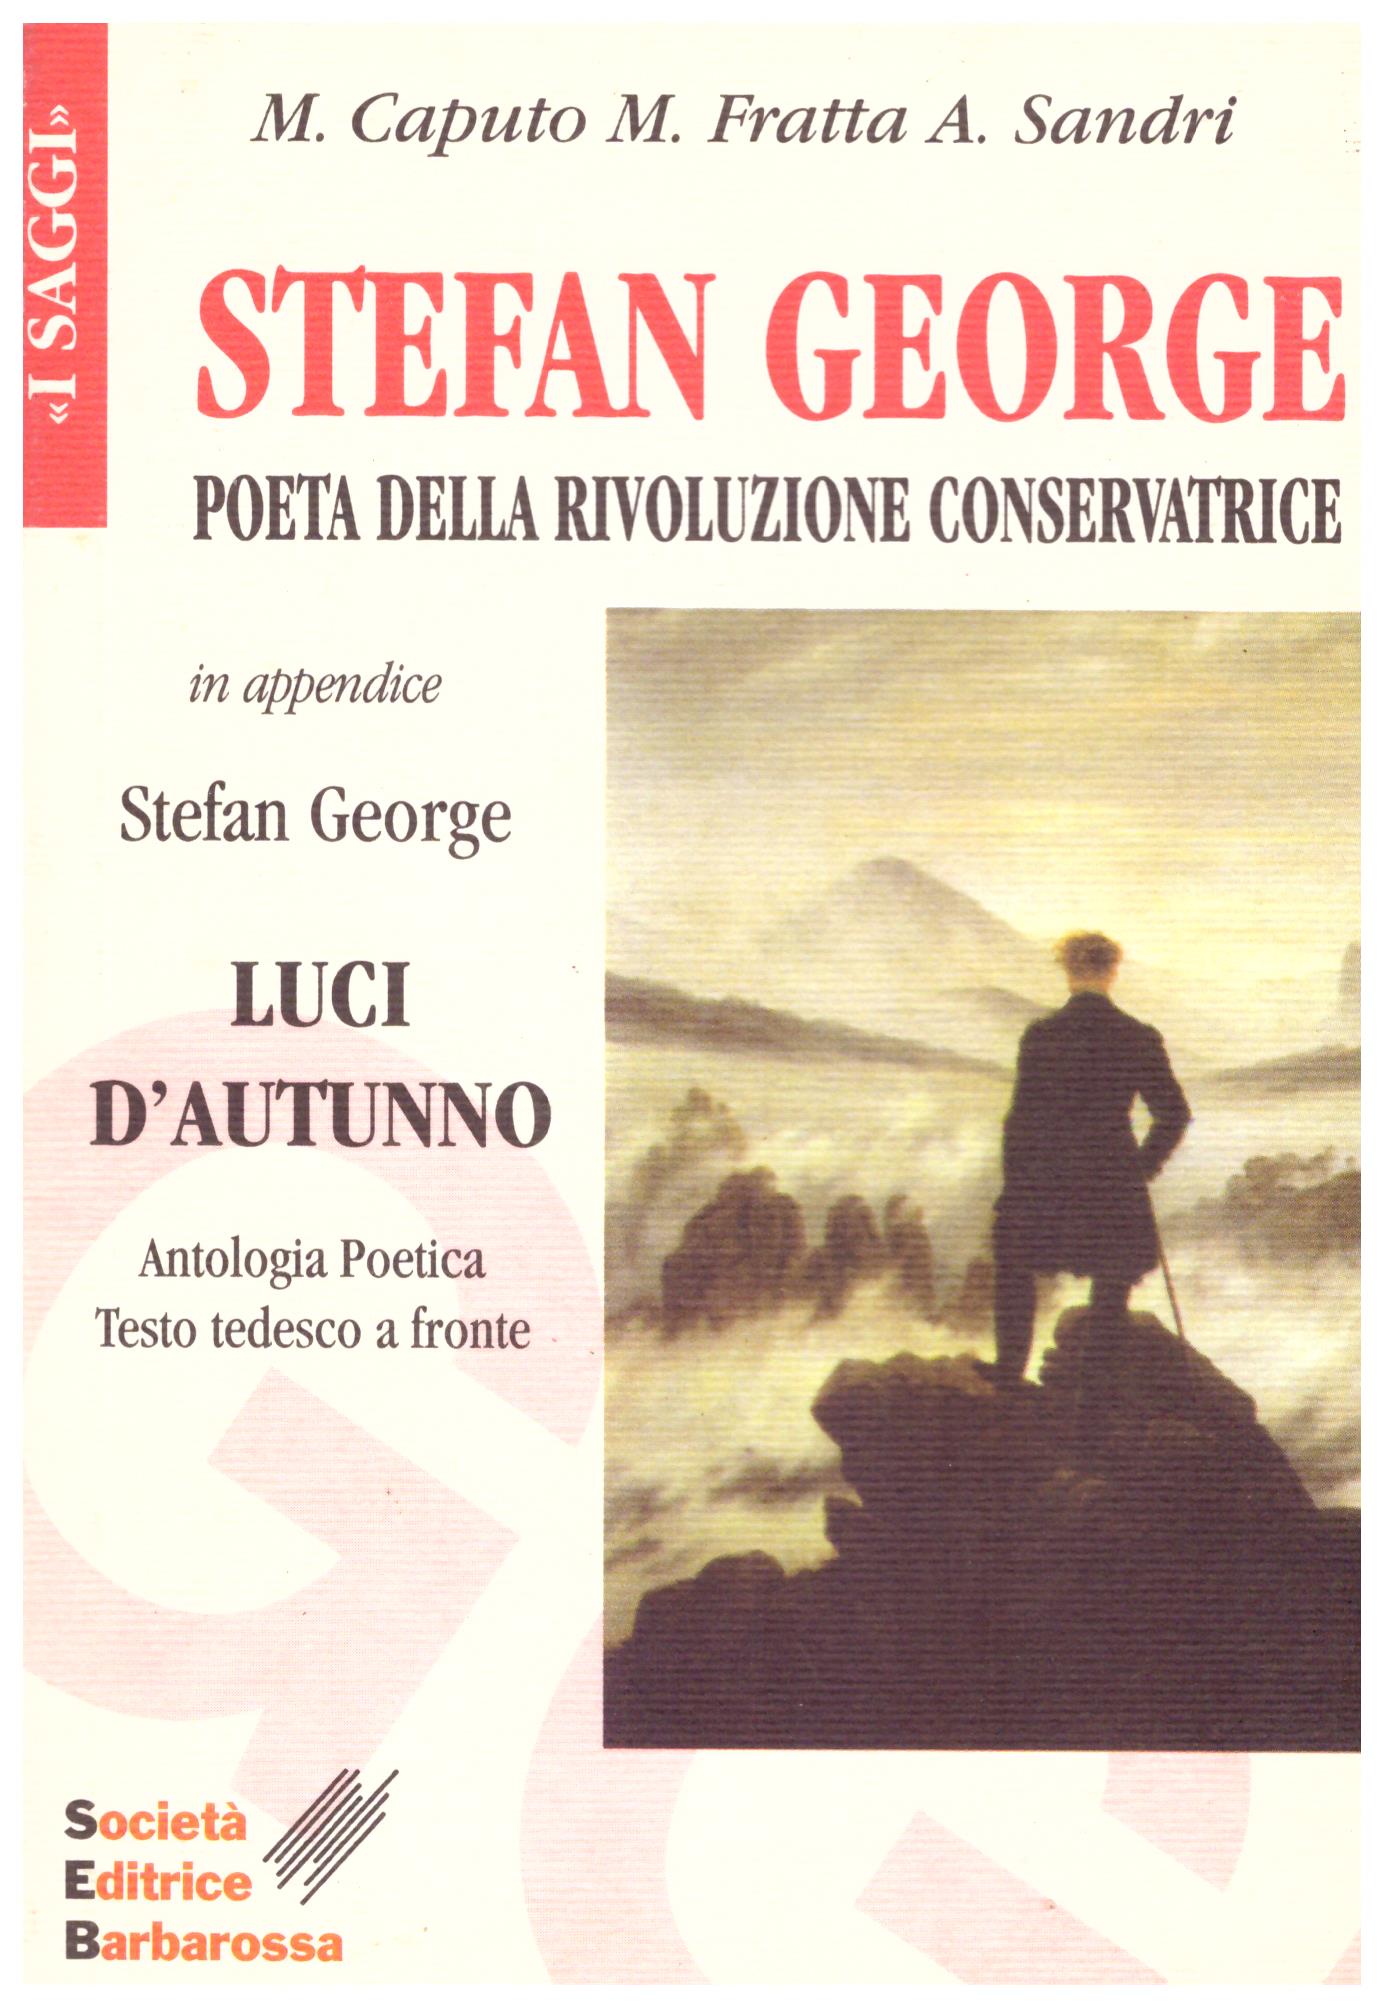 Stefan George. Poeta della rivoluzione conservatrice